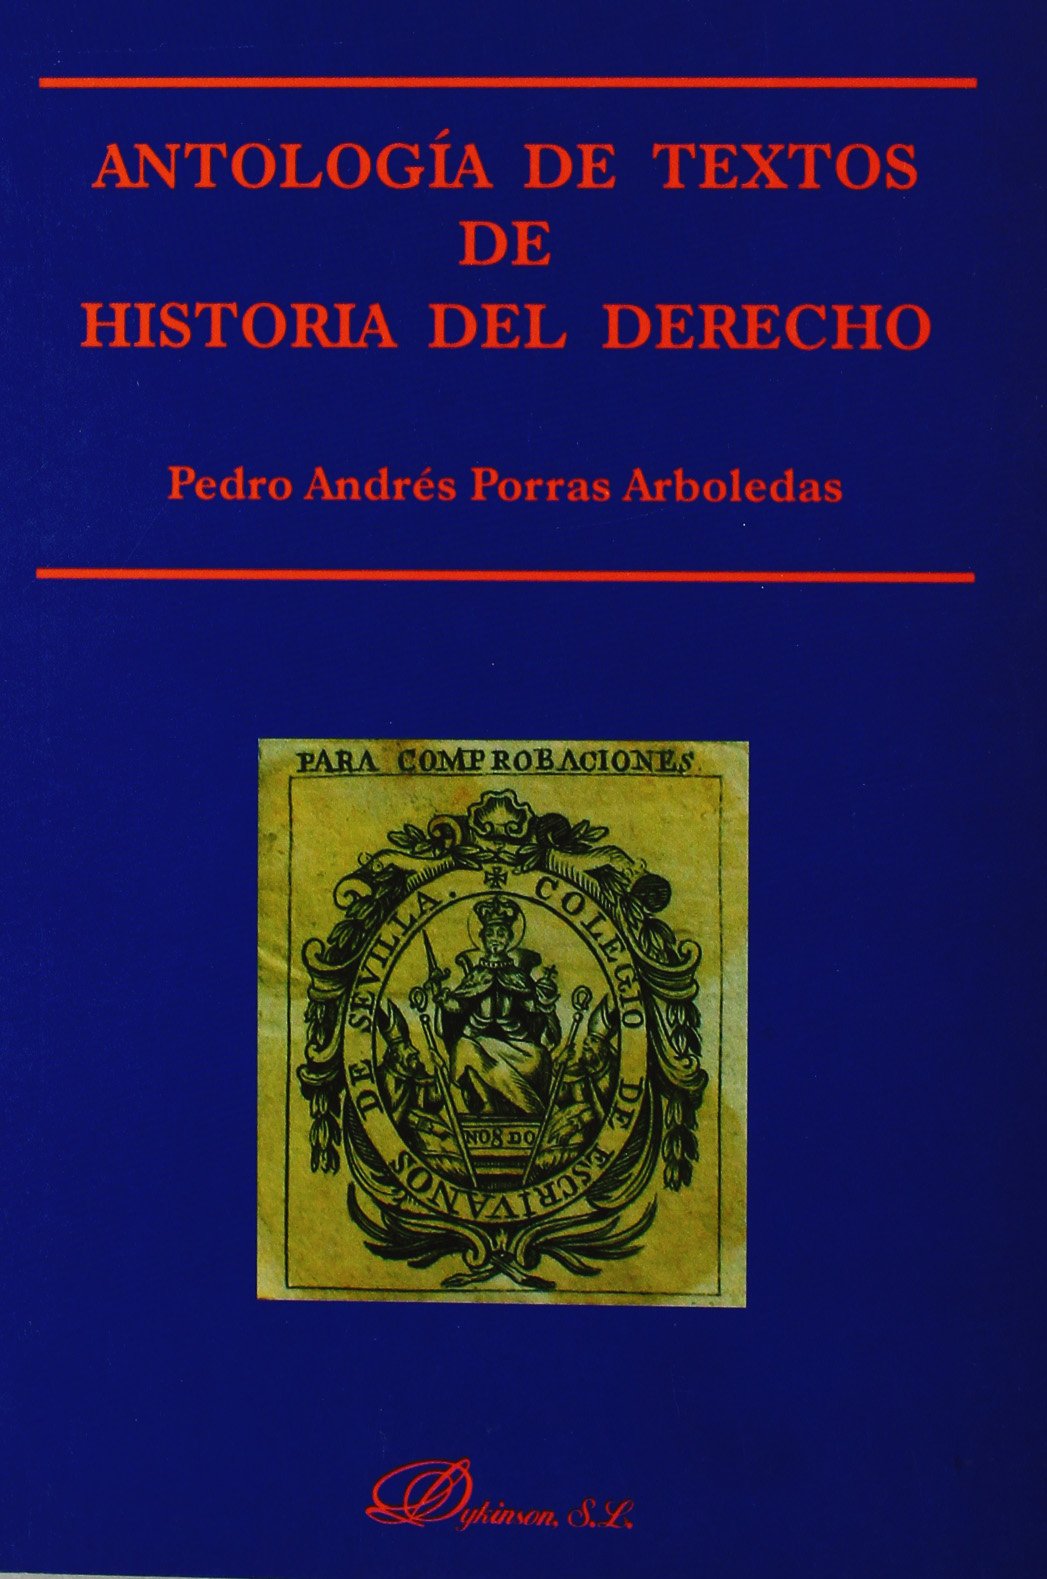 Antología de textos de historia del Derecho